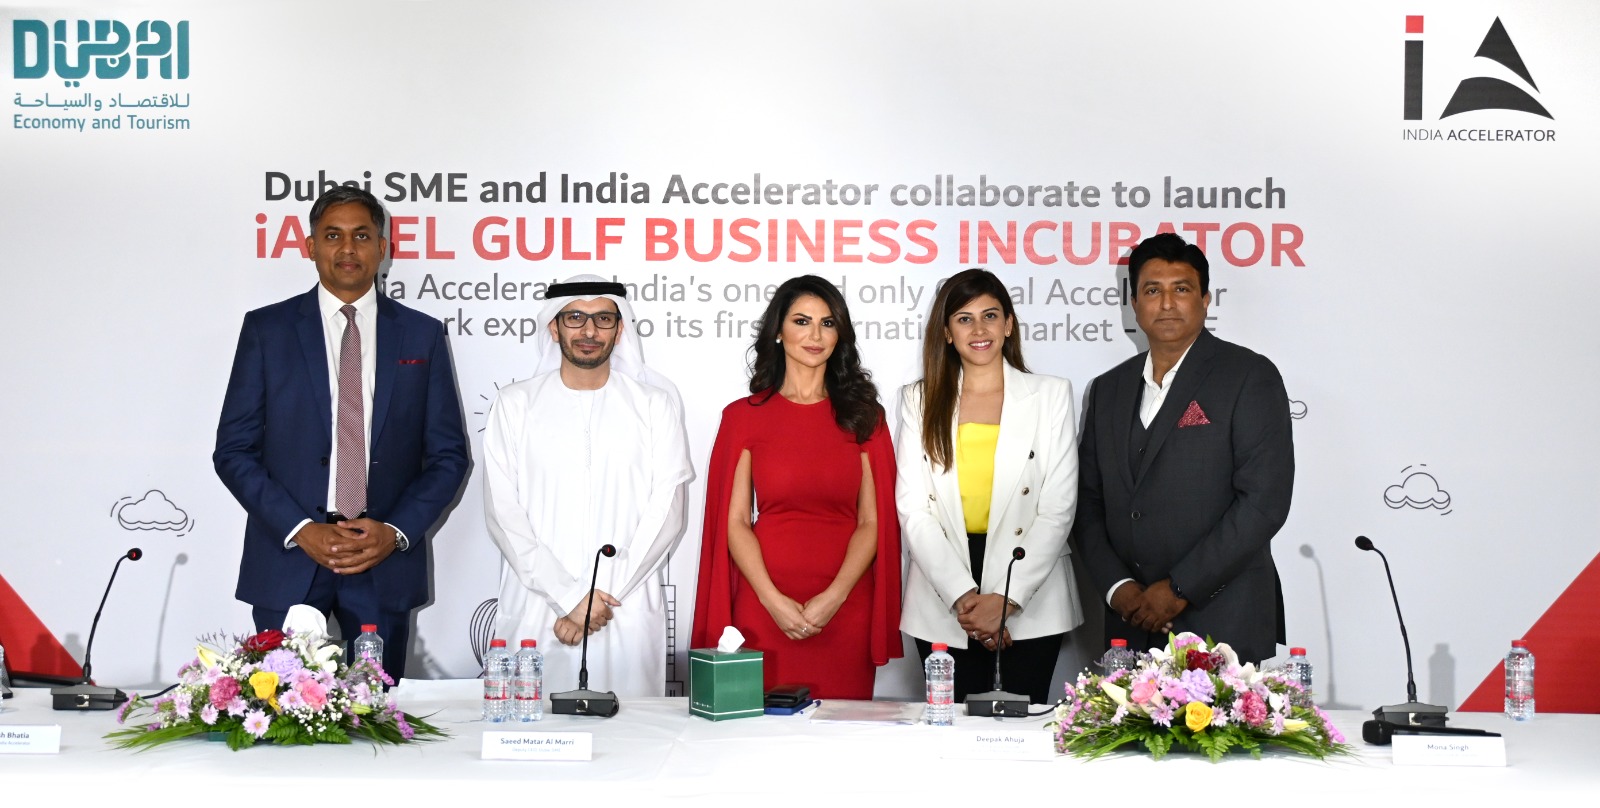 Dubai SME and India Accelerator launch iAccel Gulf Business Incubator LLC in Dubai